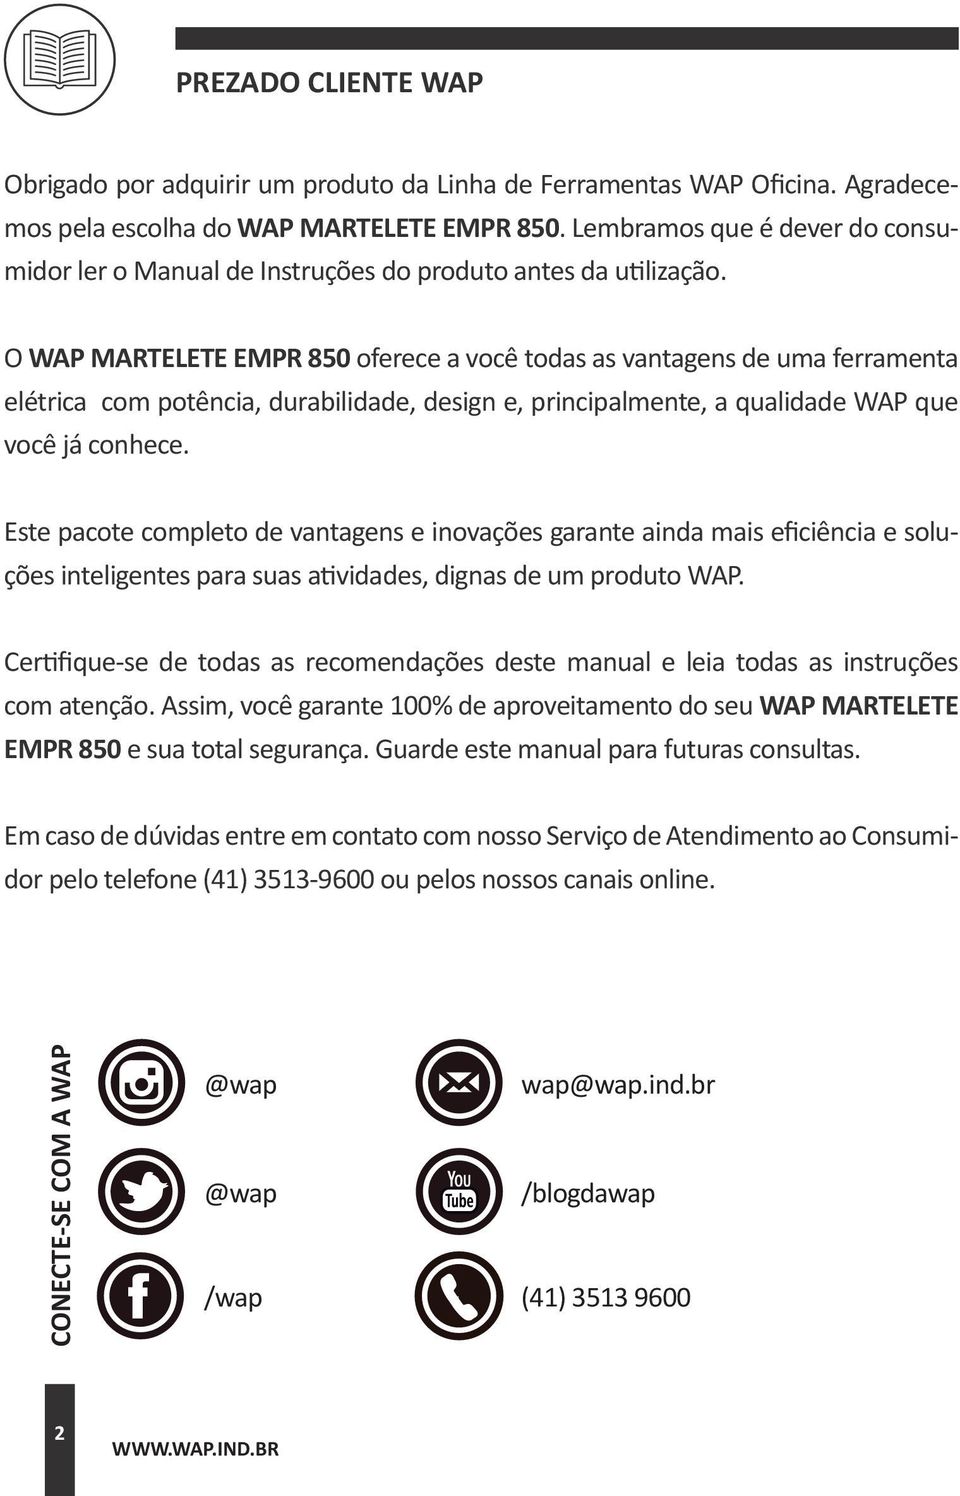 O WAP MARTELETE EMPR 850 oferece a você todas as vantagens de uma ferramenta elétrica com potência, durabilidade, design e, principalmente, a qualidade WAP que você já conhece.